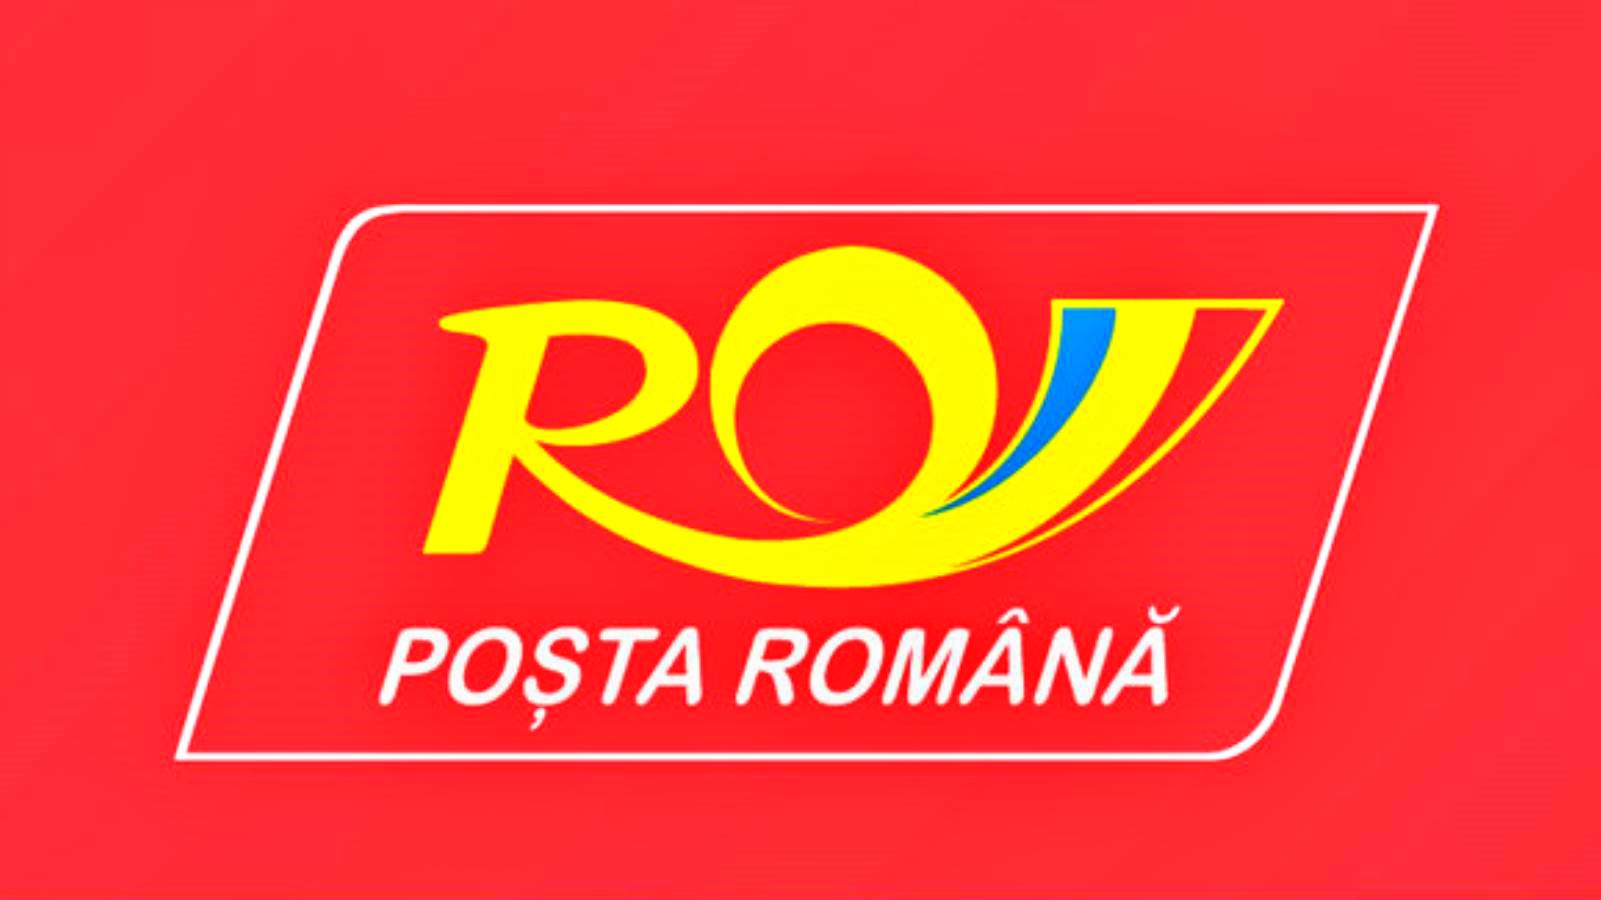 La poste roumaine annonce un partenariat avec eBay pour des MILLIONS de Roumains